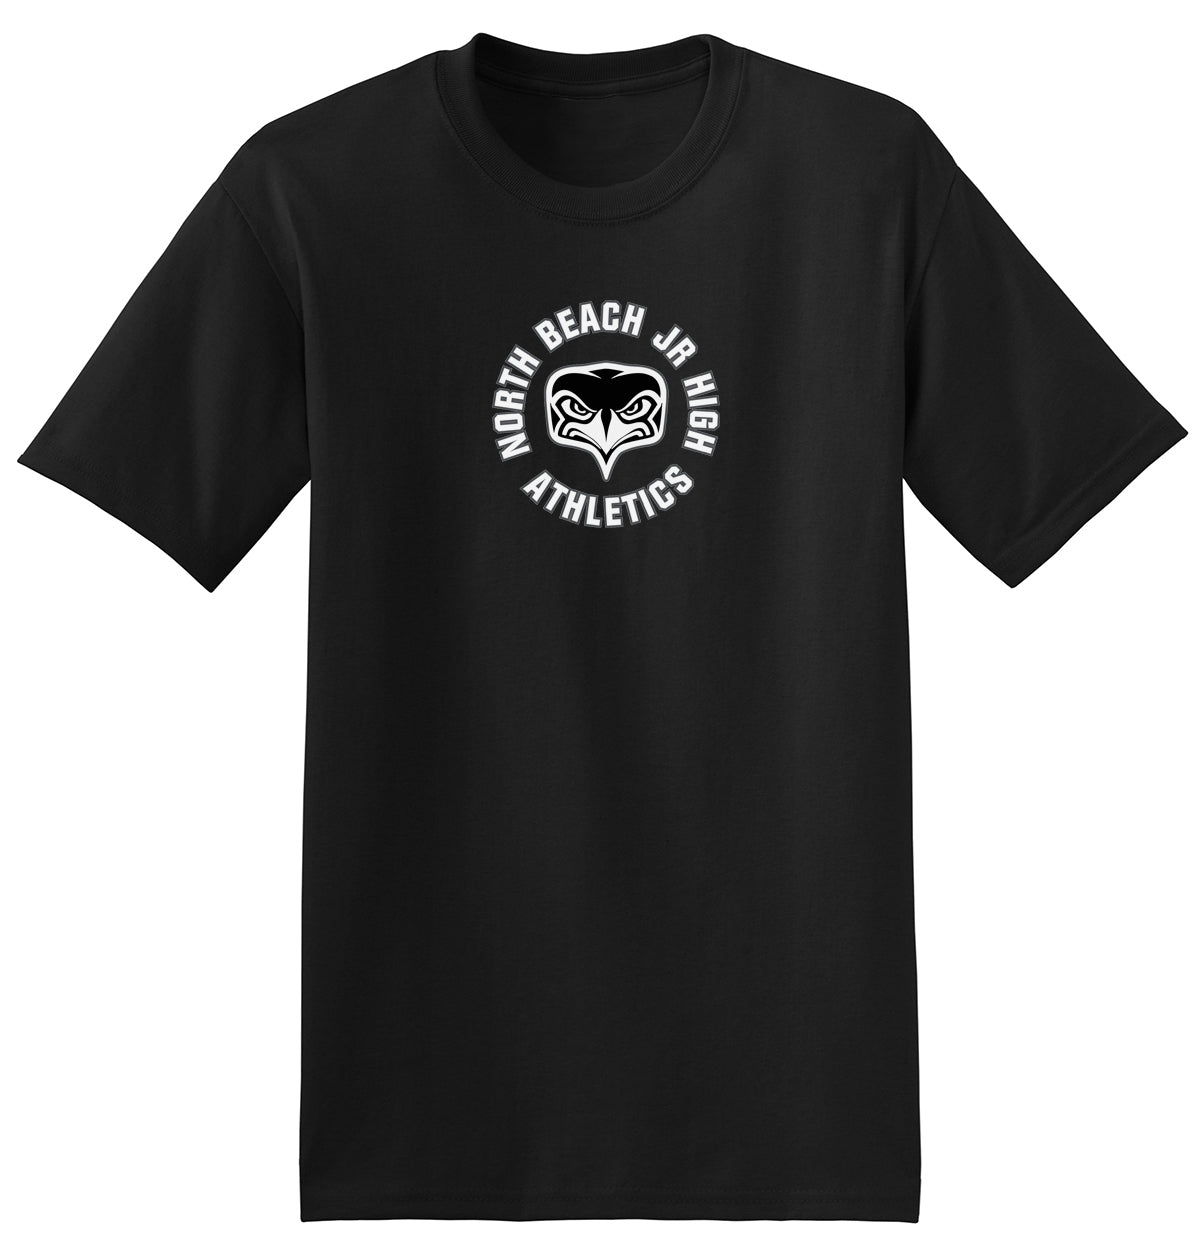 North Beach Jr. High Athletics T-Shirt